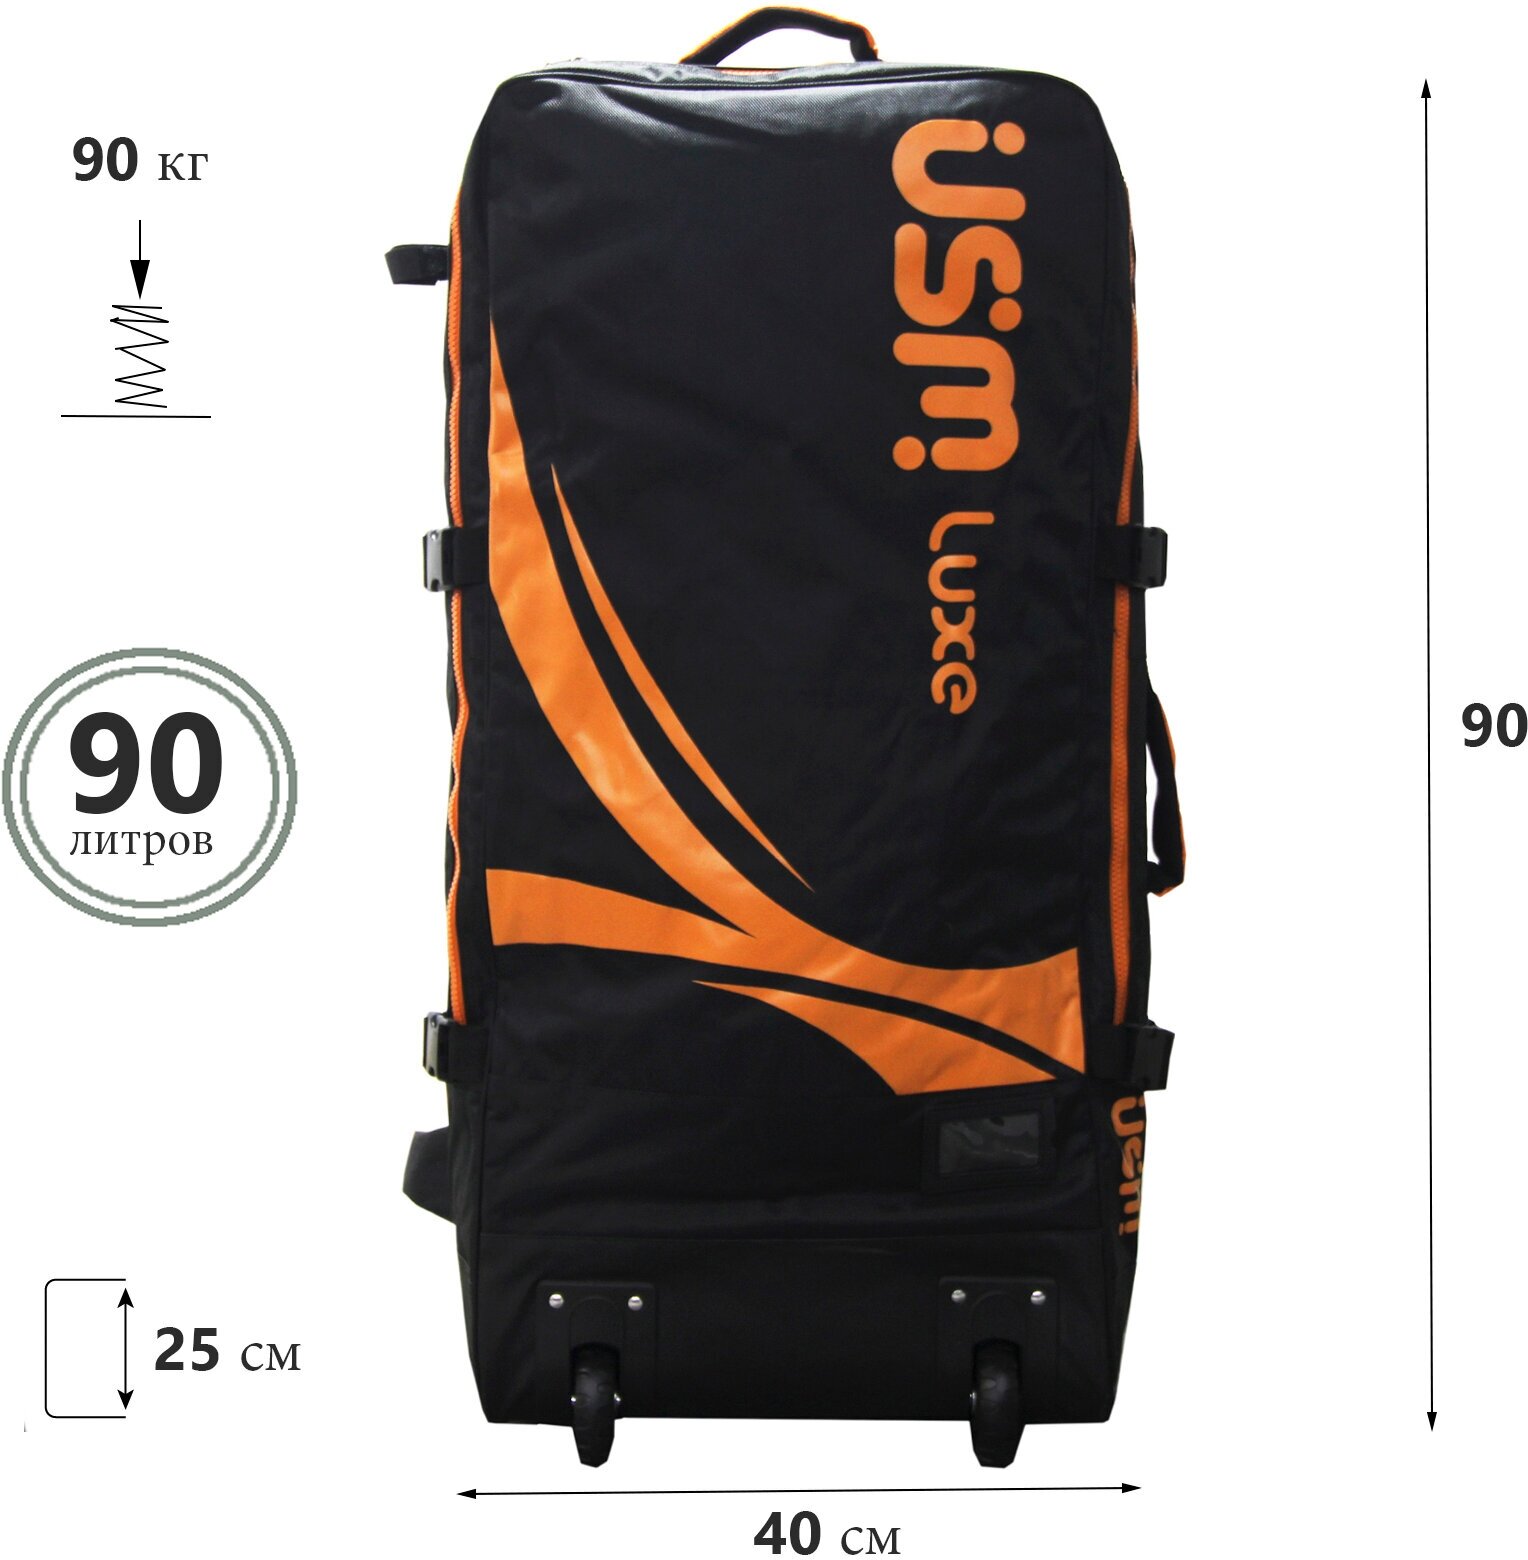 Сумка-рюкзак на колесах/ 40х25х90 cm/сумка на колесах 90 л/Рюкзак на колесах для SUP-доски